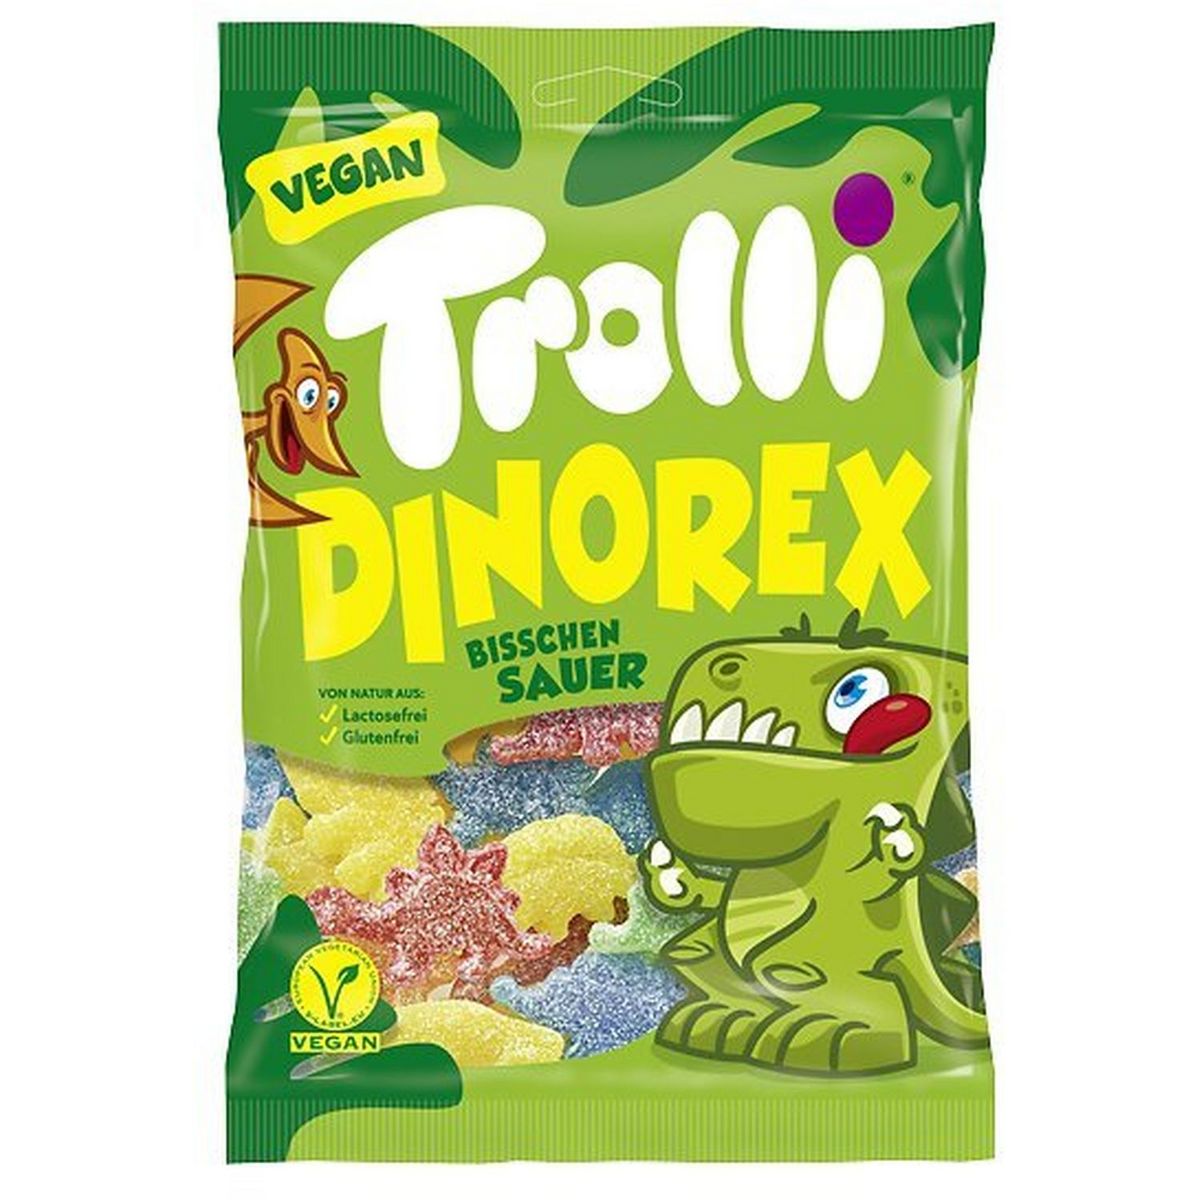 TROLLI Dinorex bonbons gélifiés vegan  200g